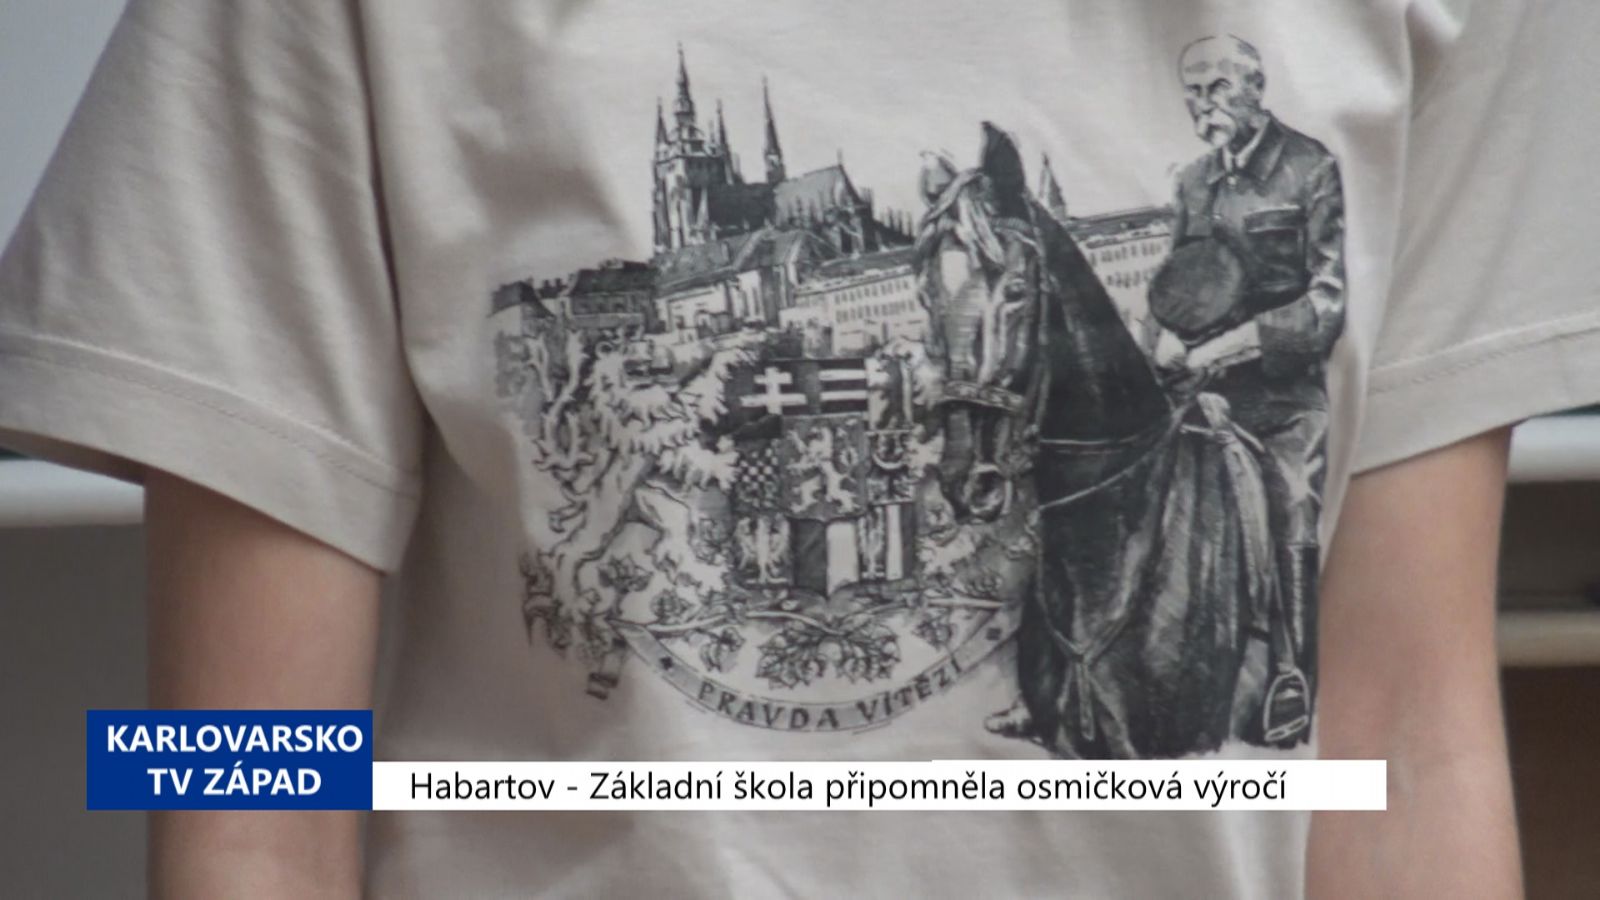 Habartov: Základní škola připomněla osmičková výročí (TV Západ)